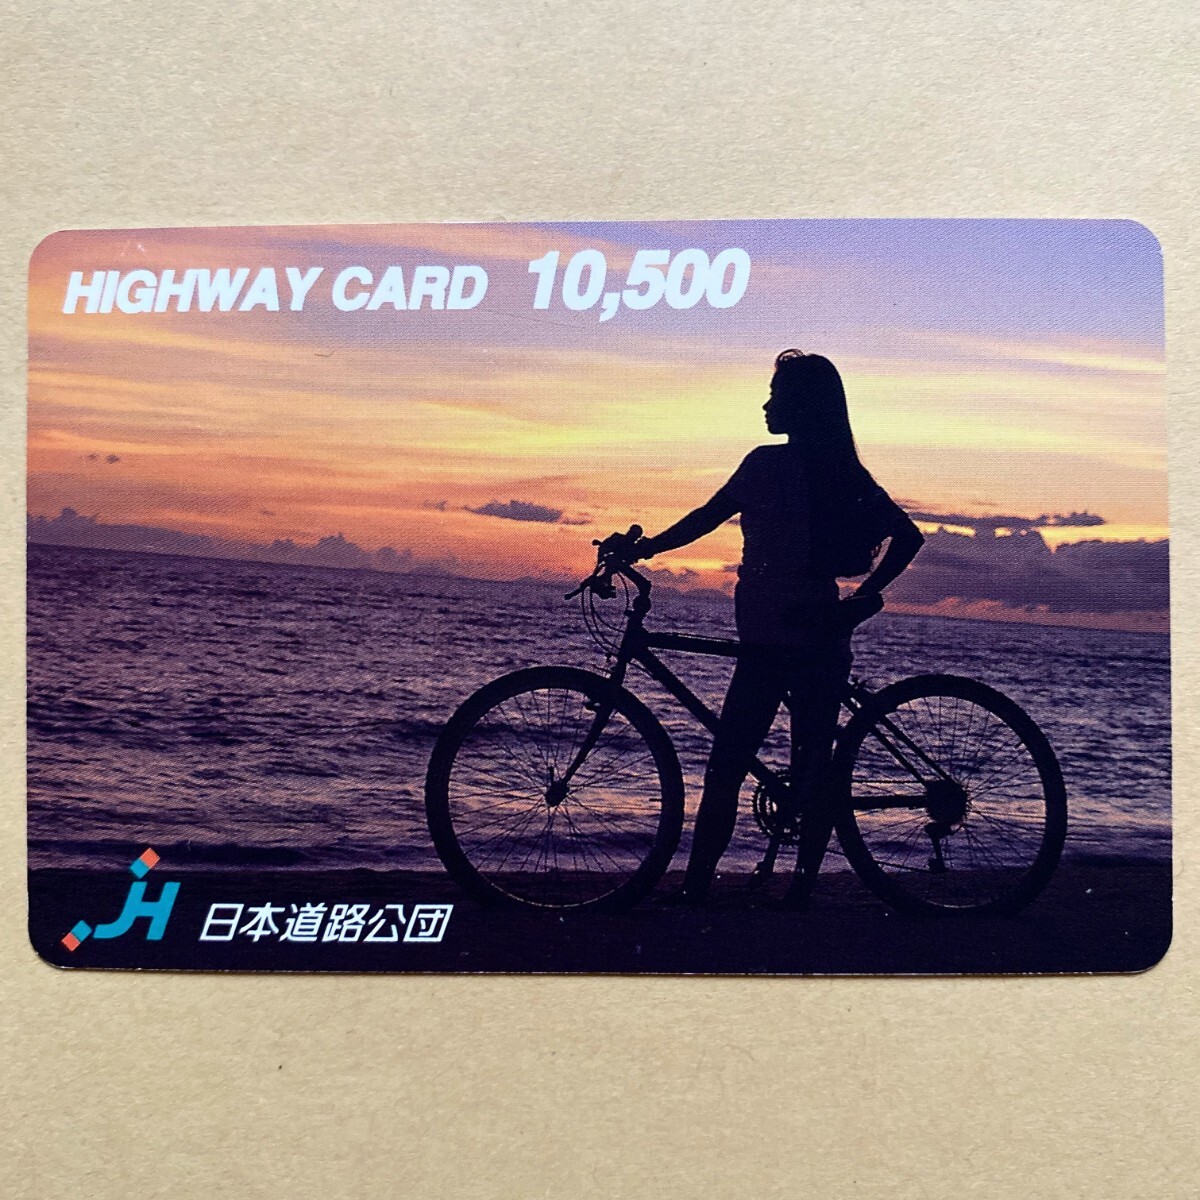 【使用済】 ハイウェイカード 日本道路公団 海辺の女性 夕景 自転車_画像1